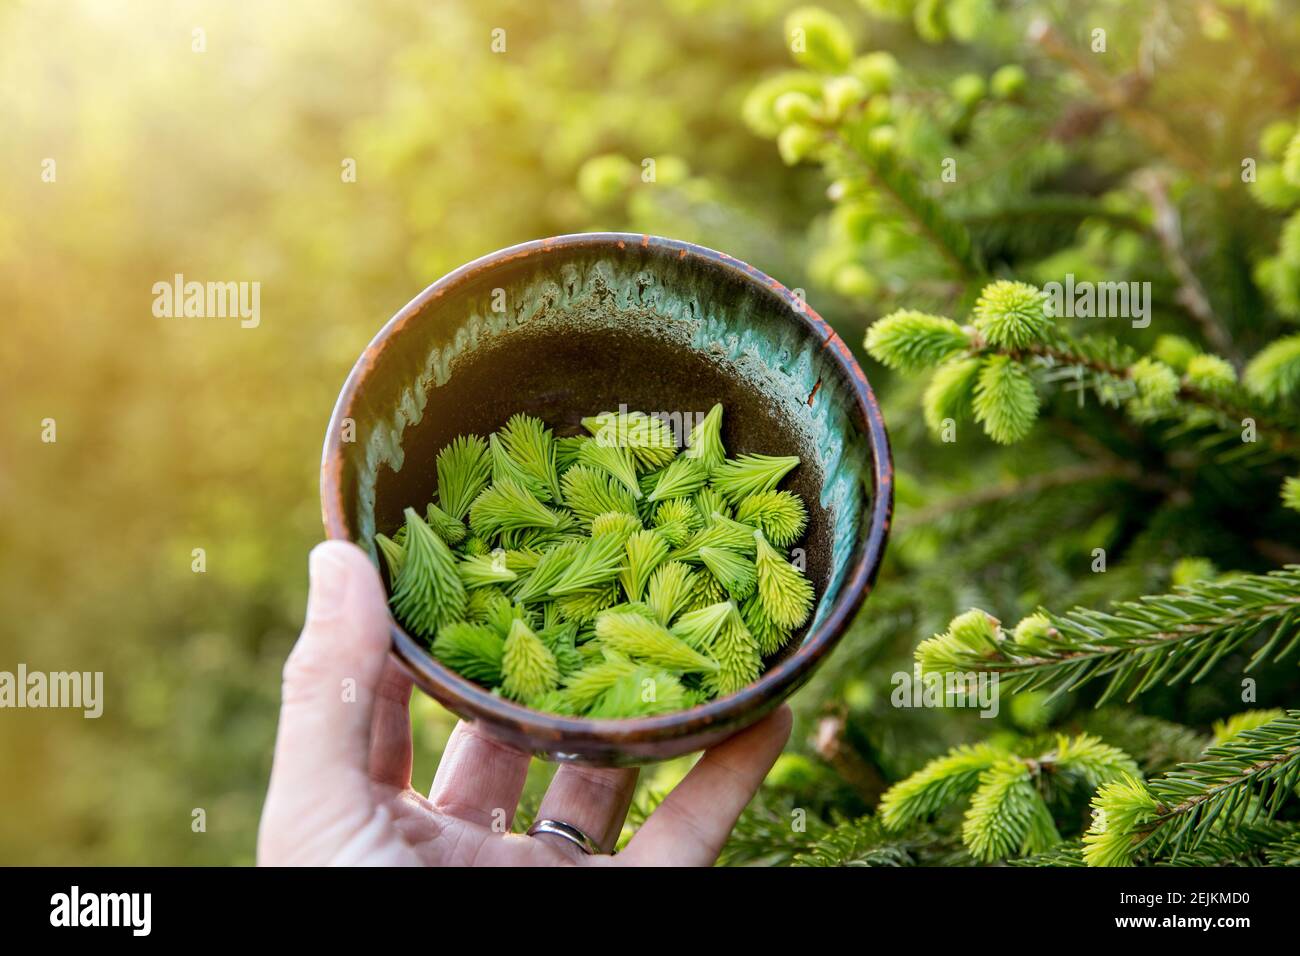 Gepflückt Fichte Picea frische Tipps im Frühjahr im Freien von wachsenden Fichte. Lebensmittel und pflanzliche Arzneimittel Zutaten. Stockfoto